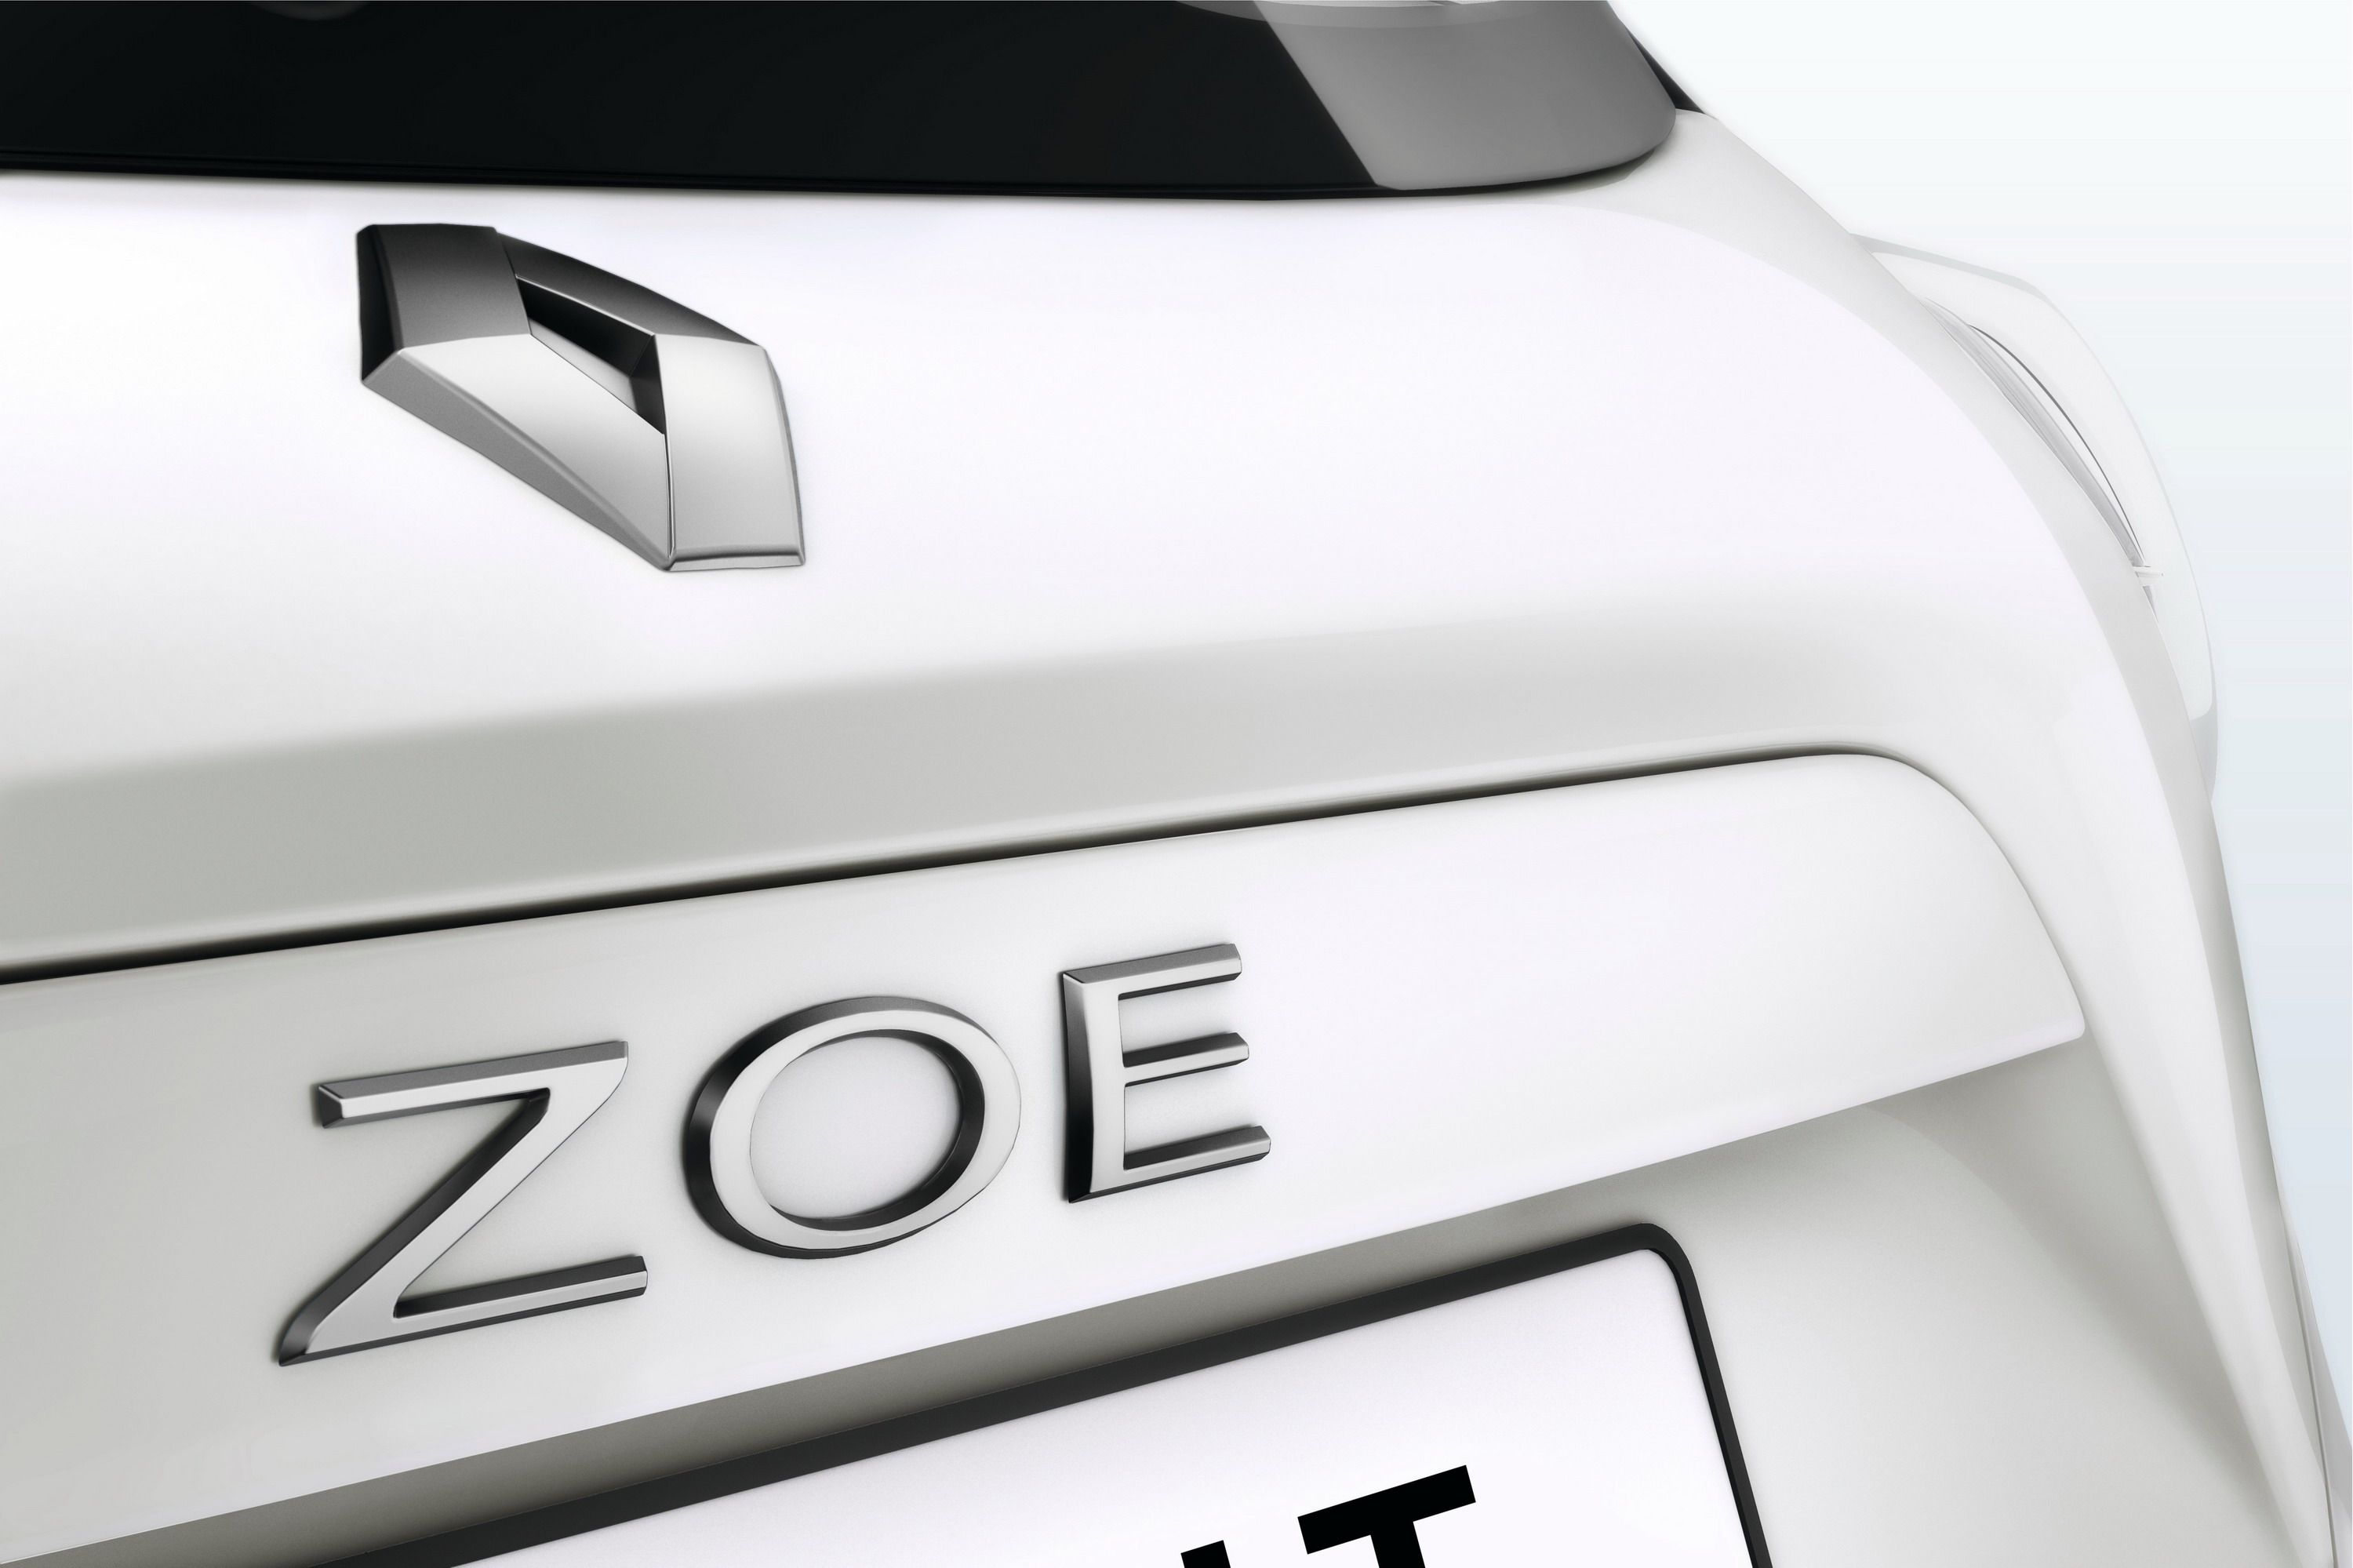 2017 Renault Zoe